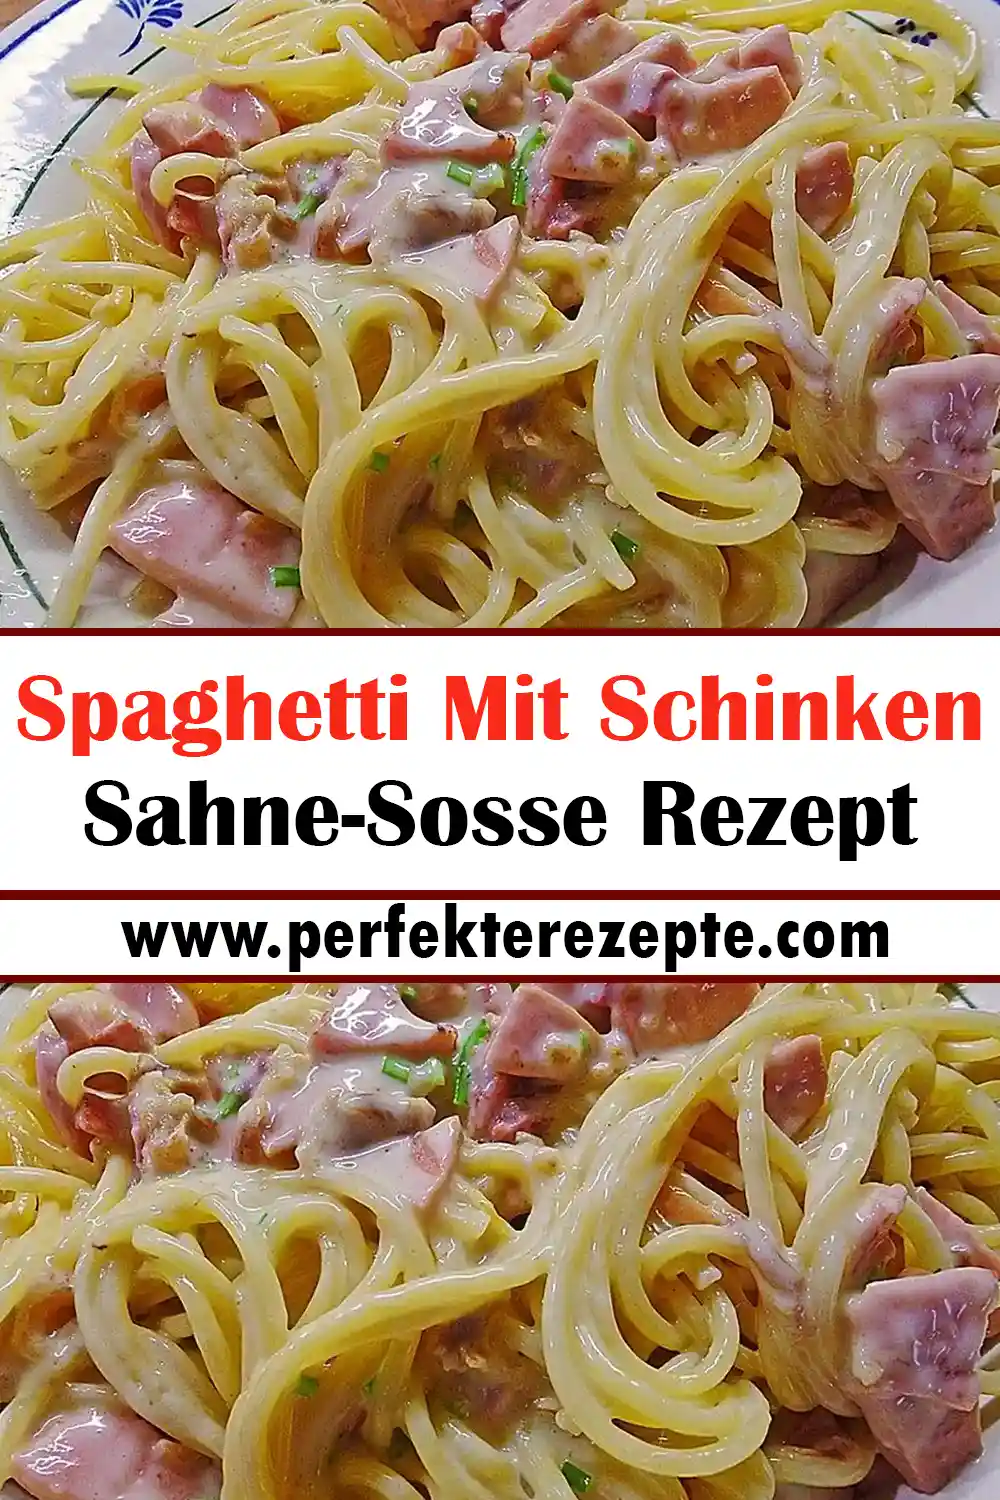 Spaghetti Mit Schinken Sahne-Sosse Rezept